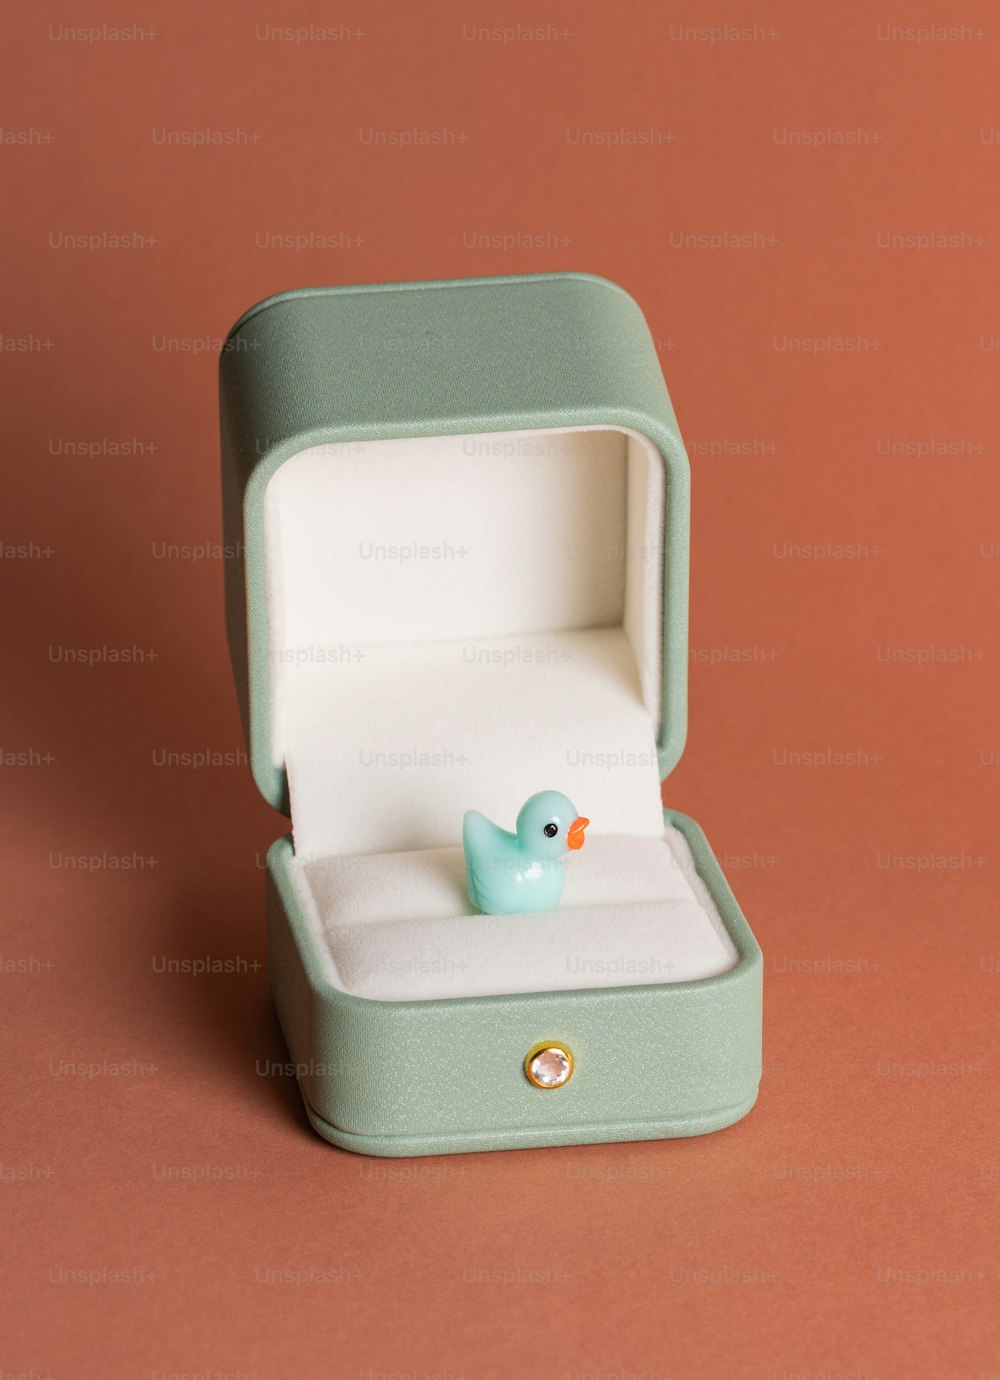 Un pequeño pato de goma azul en una caja verde